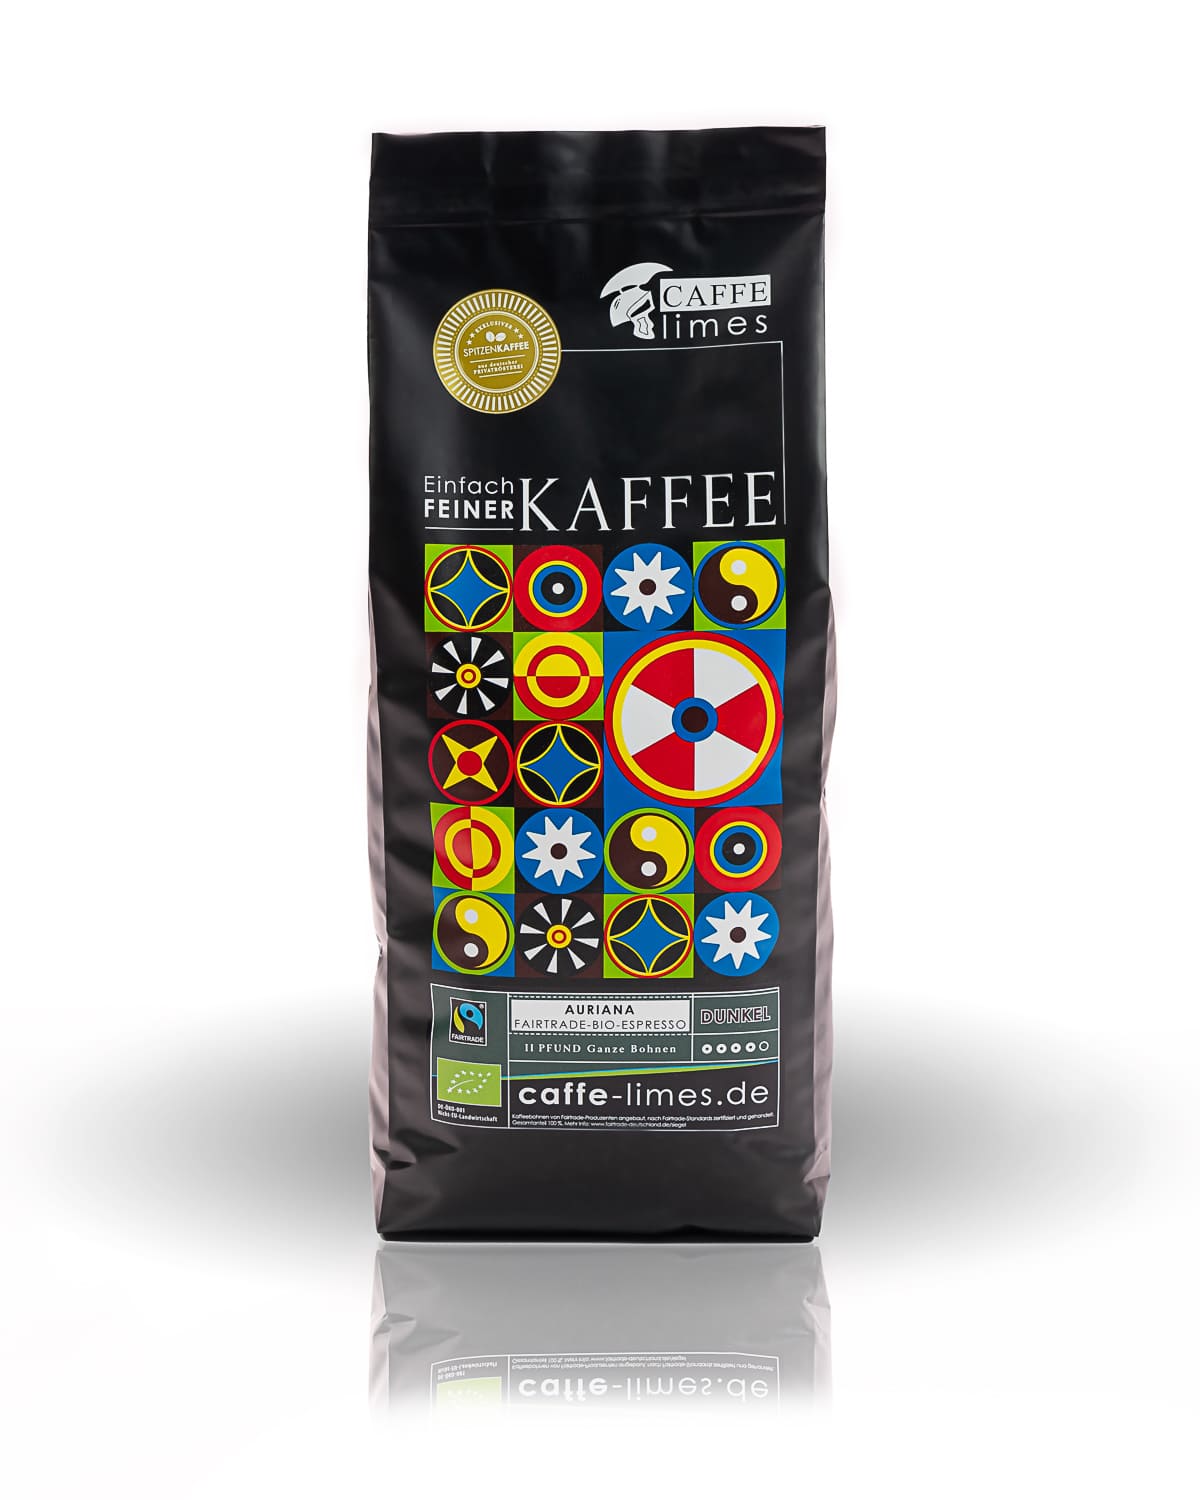 Caffe Limes Fairtrade-Bio Espresso Auriana